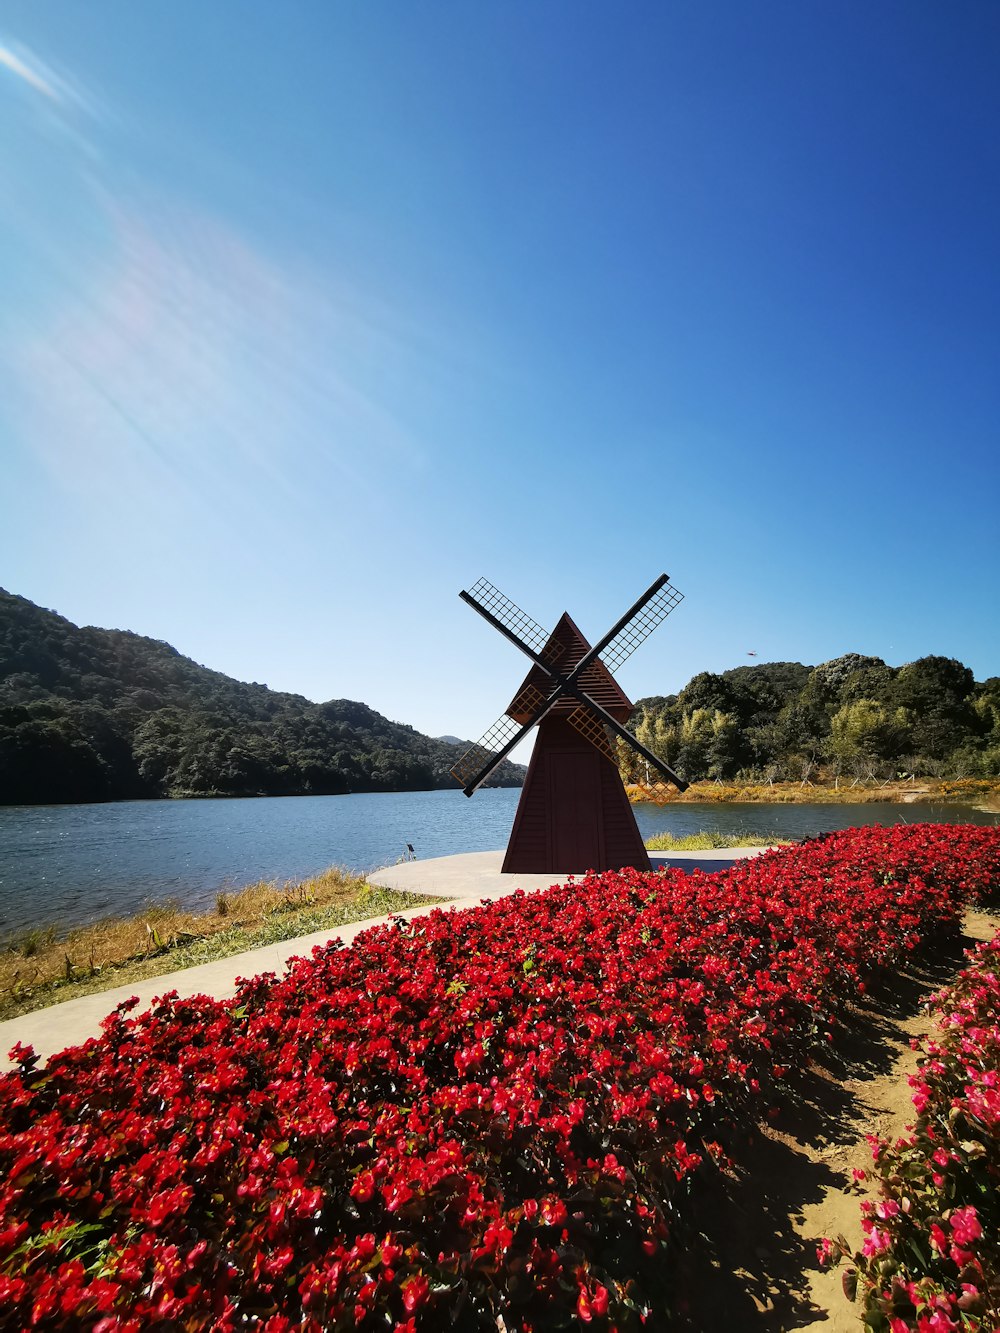 red flower field near windmill